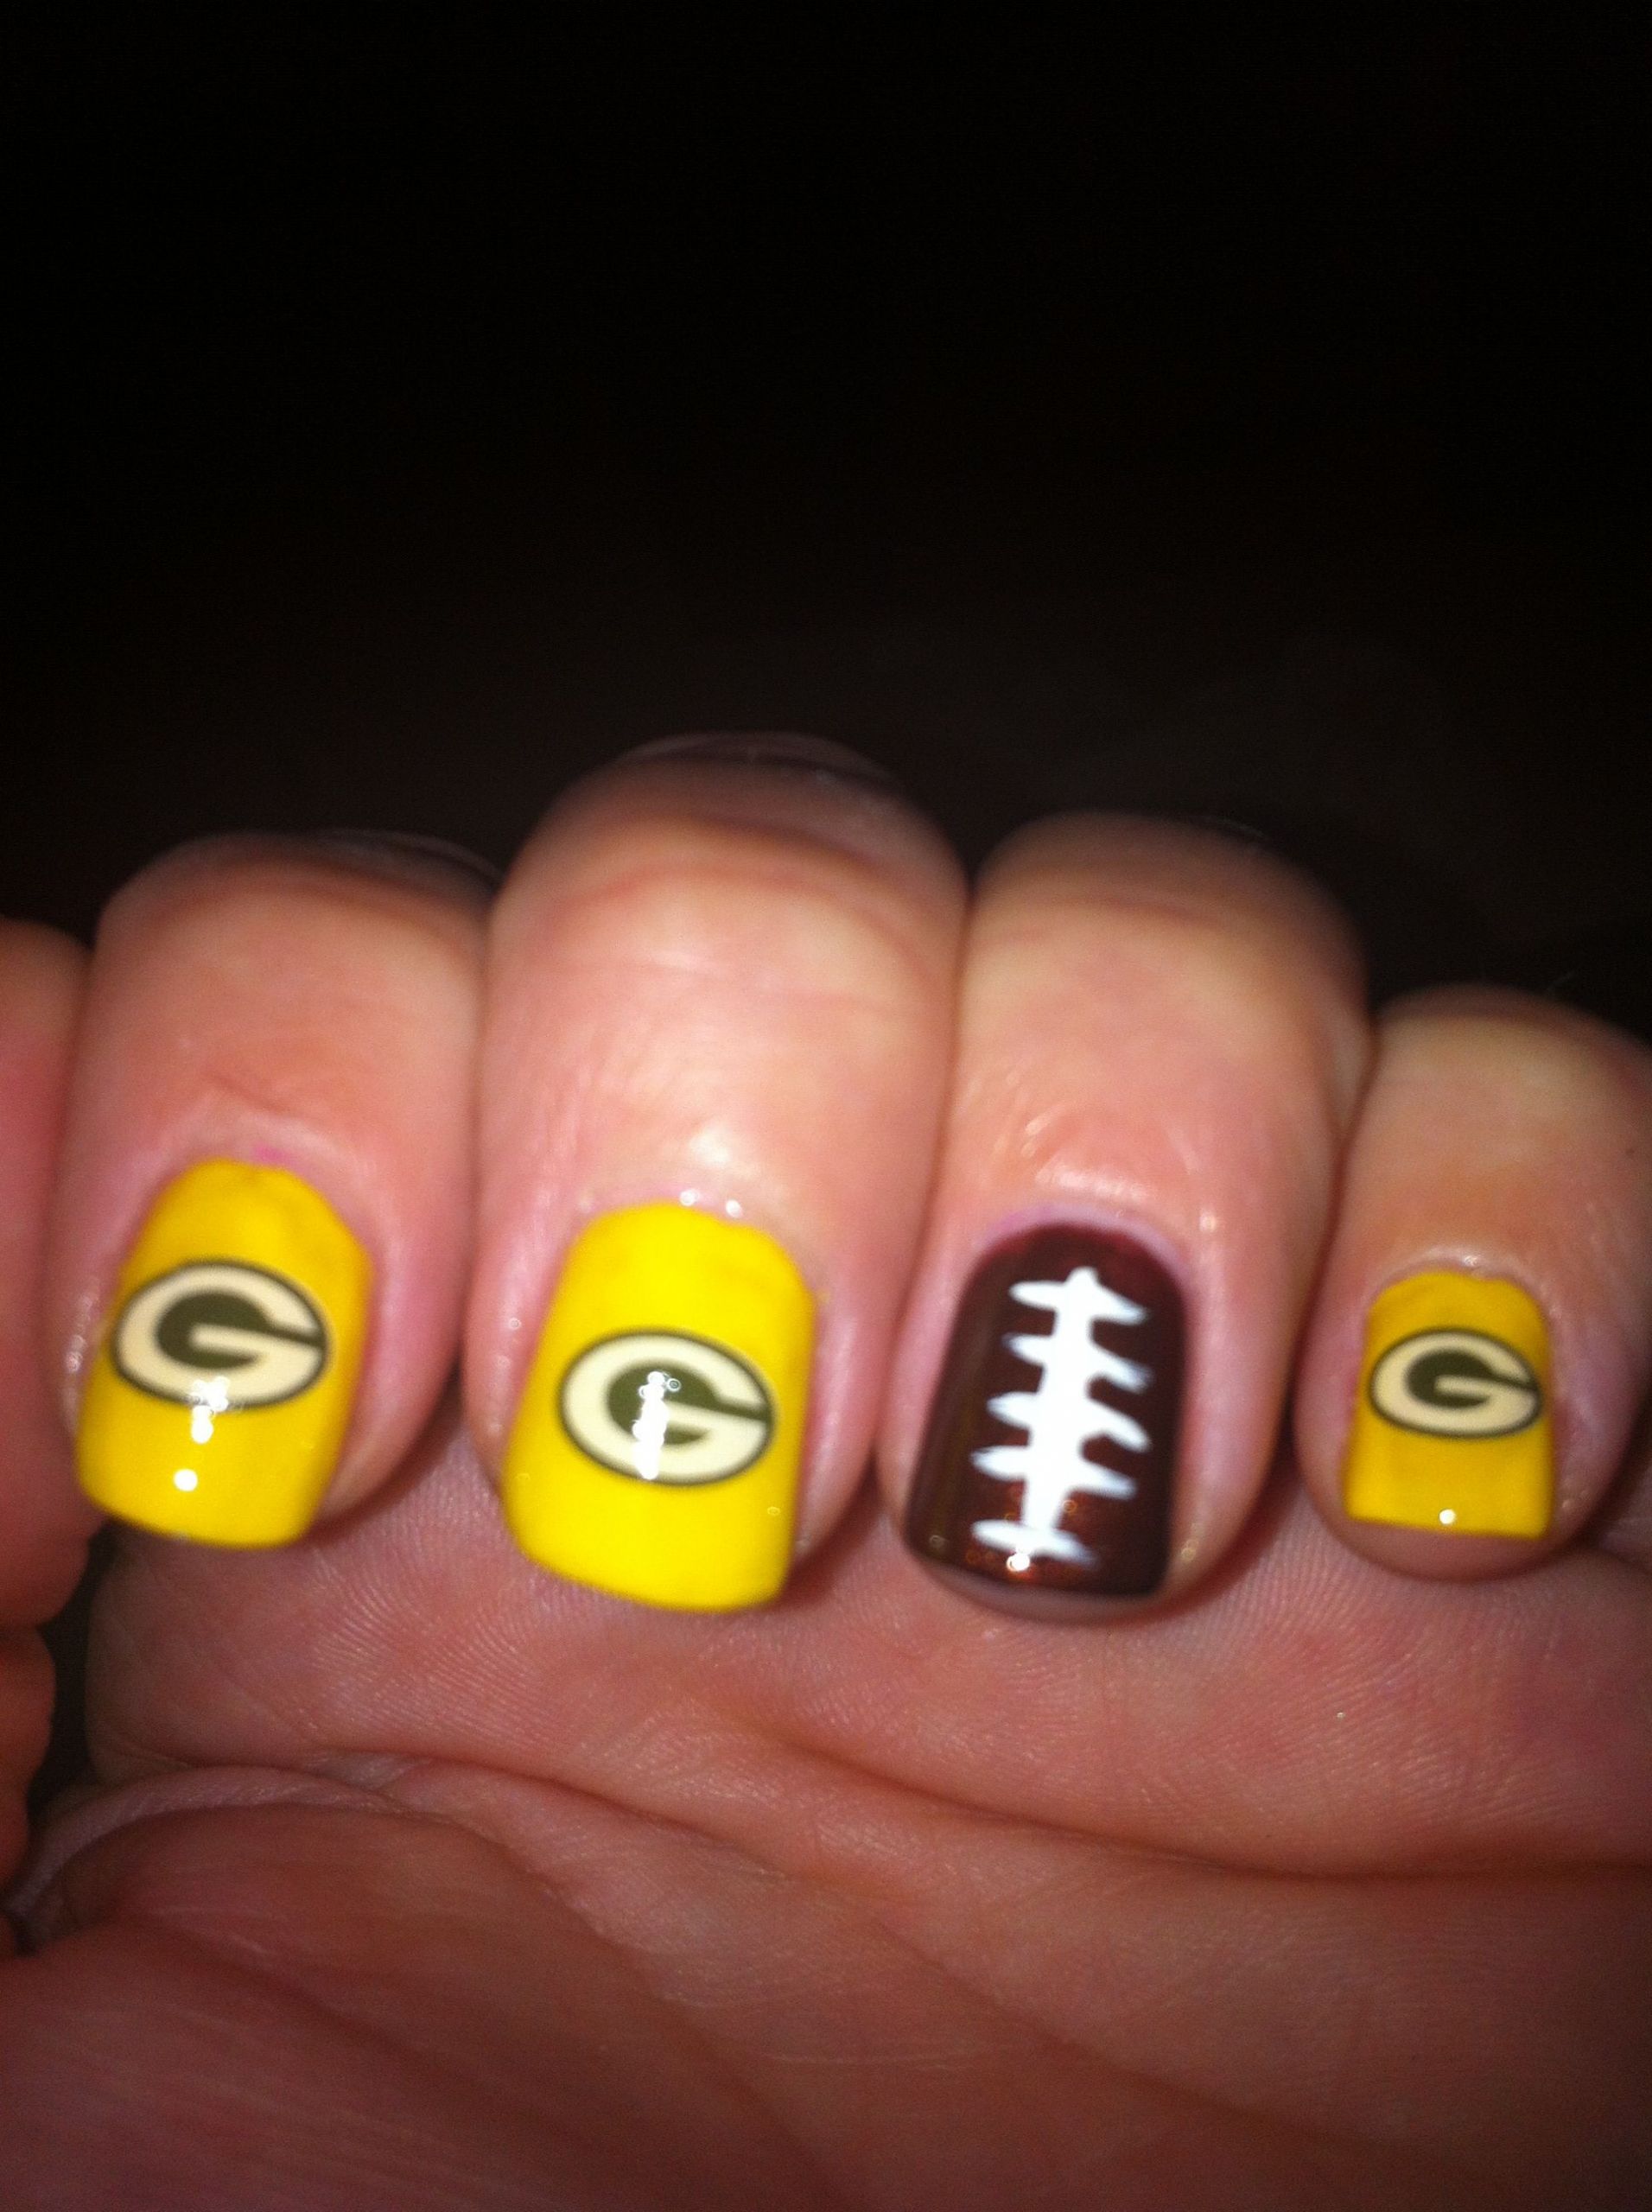 Green Bay Packers Nail Designs
 My Packer nails